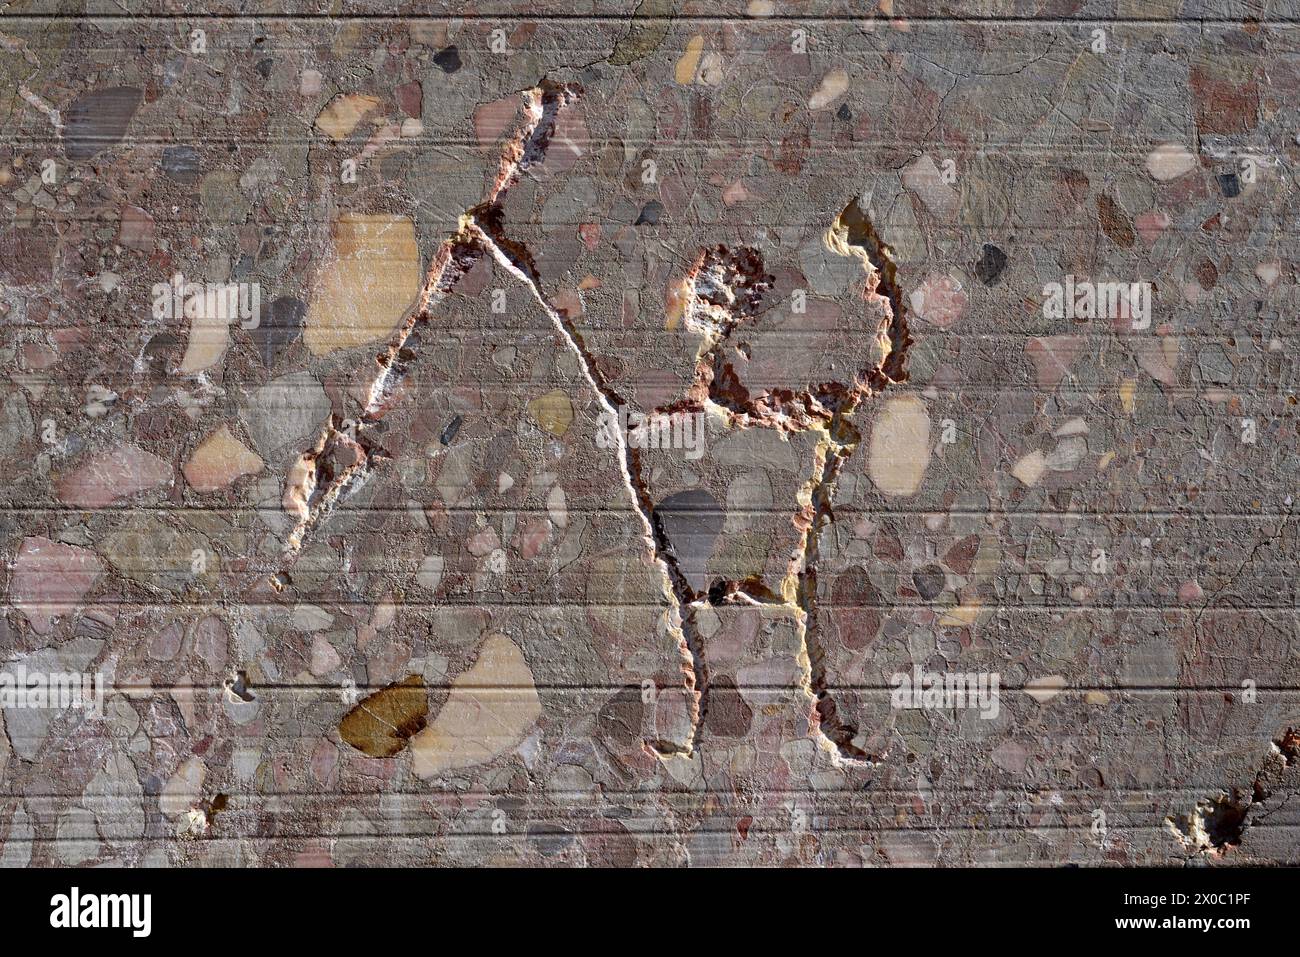 Zeitgenössisches Graffiti oder Ätzen im Marmorbruch des primitiven Mannes mit Speer oder Pfeil, Montagne Sainte-Victoire Mountain in der Nähe von Aix-en-Provence Frankreich Stockfoto